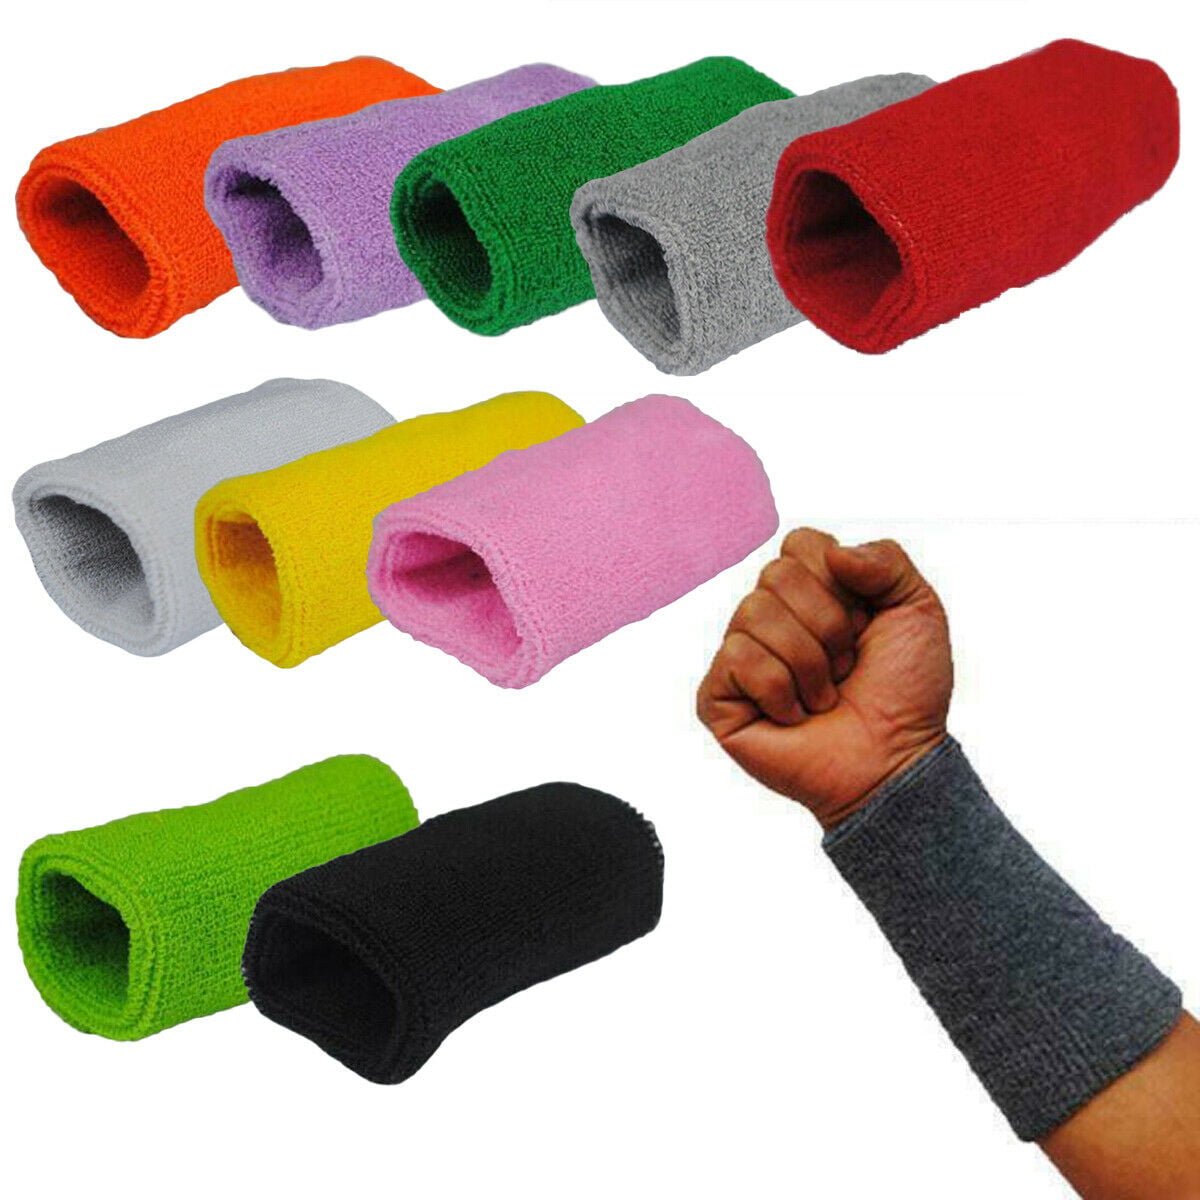 2PC Cotton Sweat Band Sweatband Wristband Arm Basketball Gym Unisex